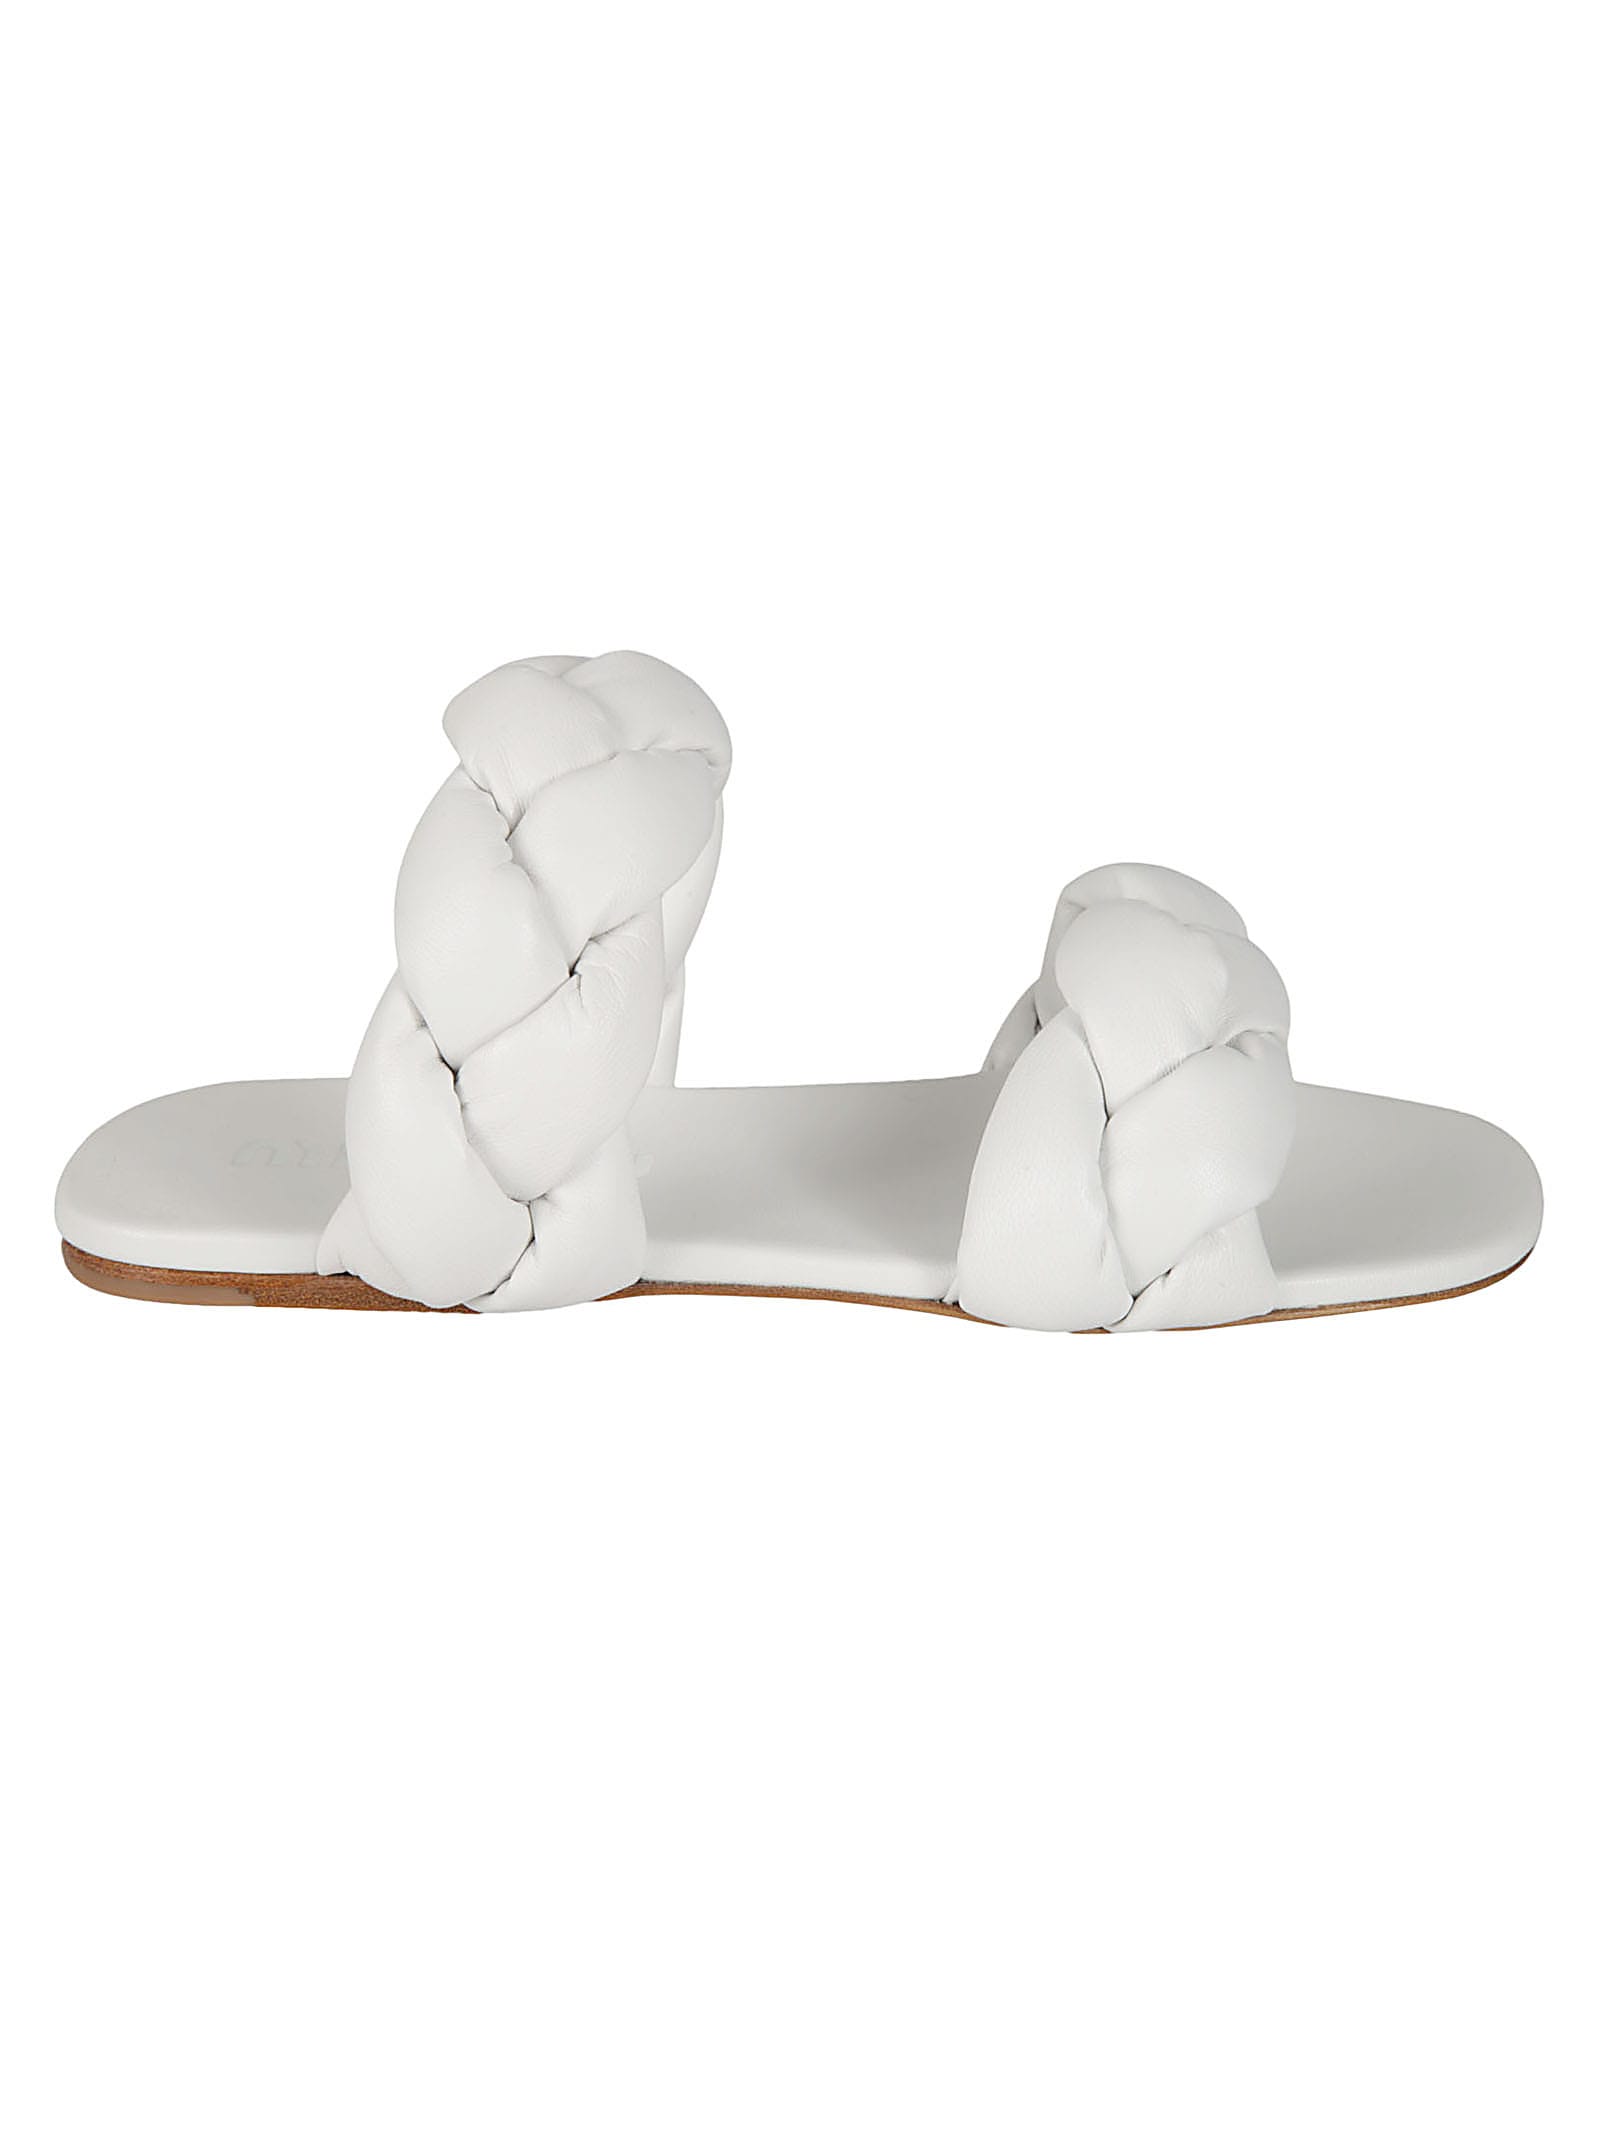 Buy Miu Miu Woven Strap Flat Sandals online, shop Miu Miu shoes with free shipping